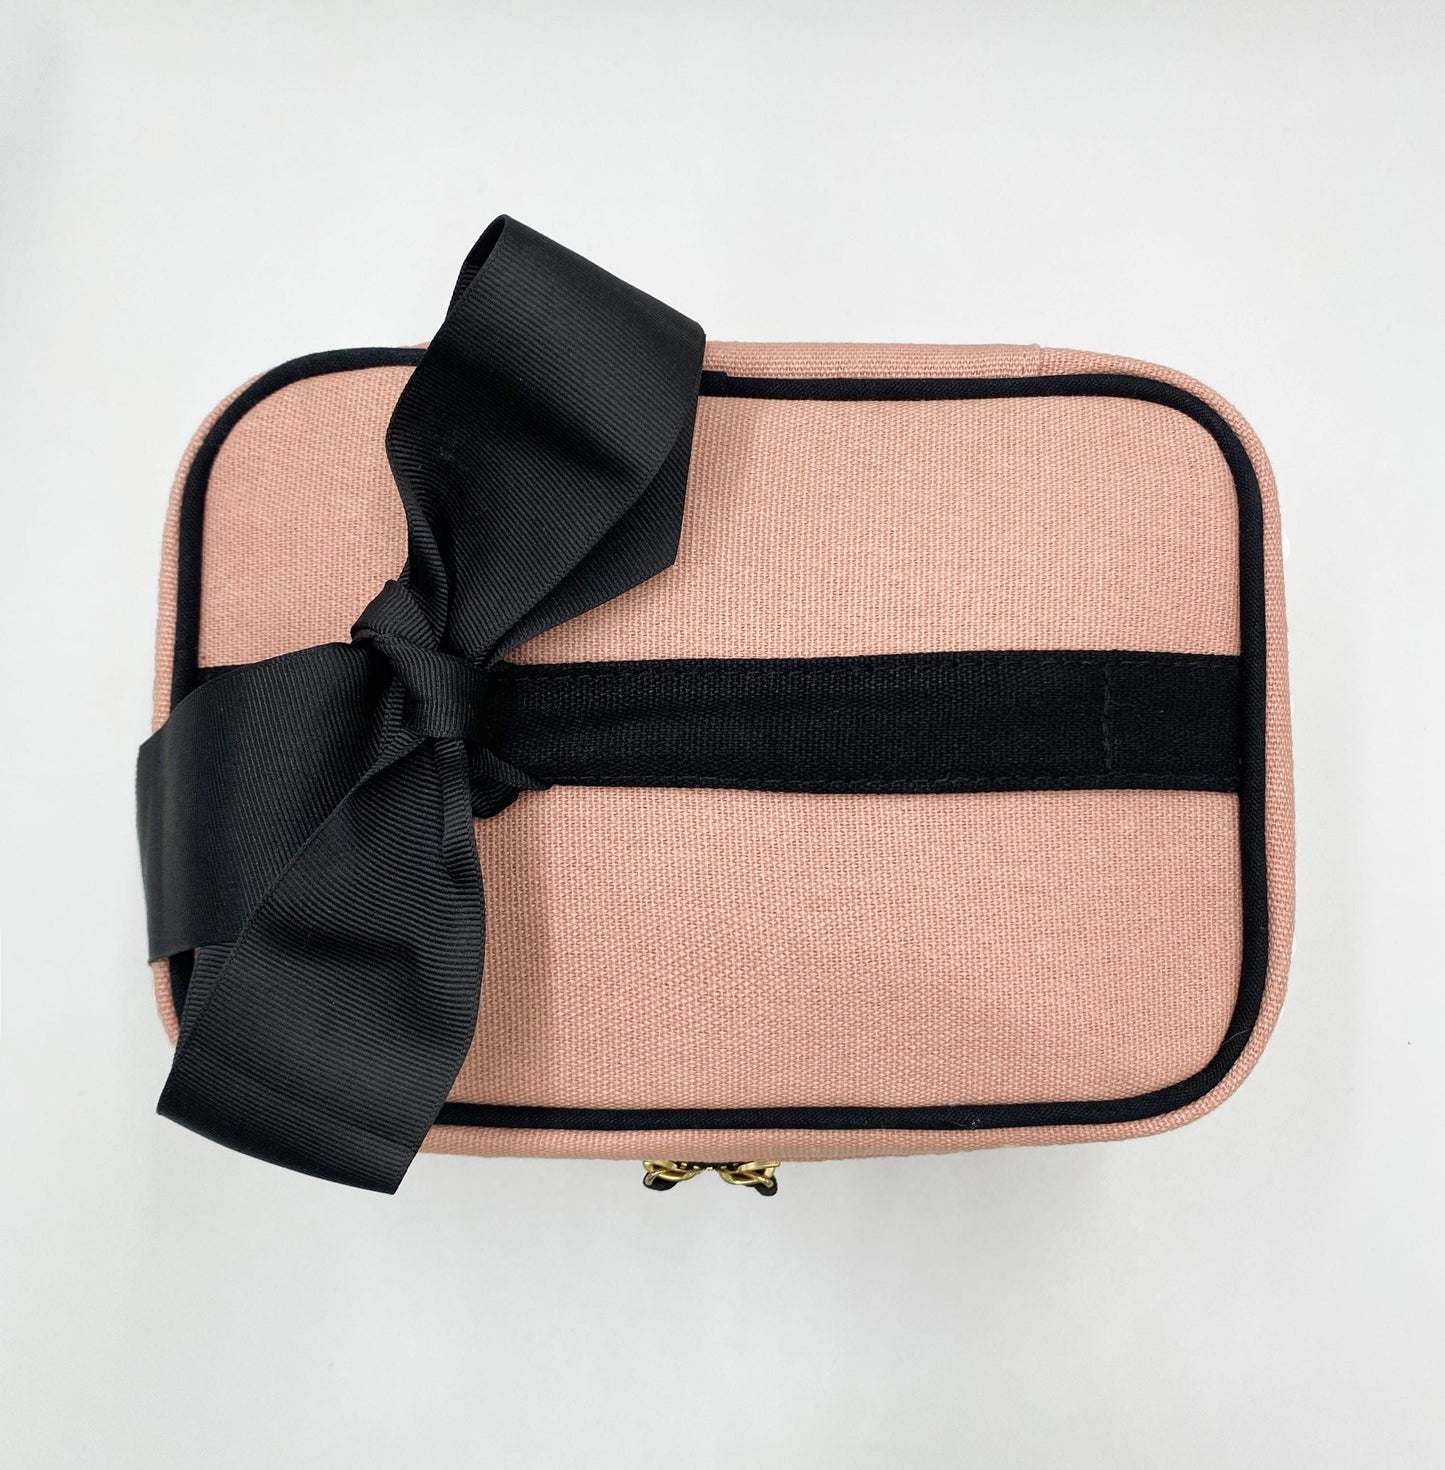 Bag-all My Vanity Case - Pink